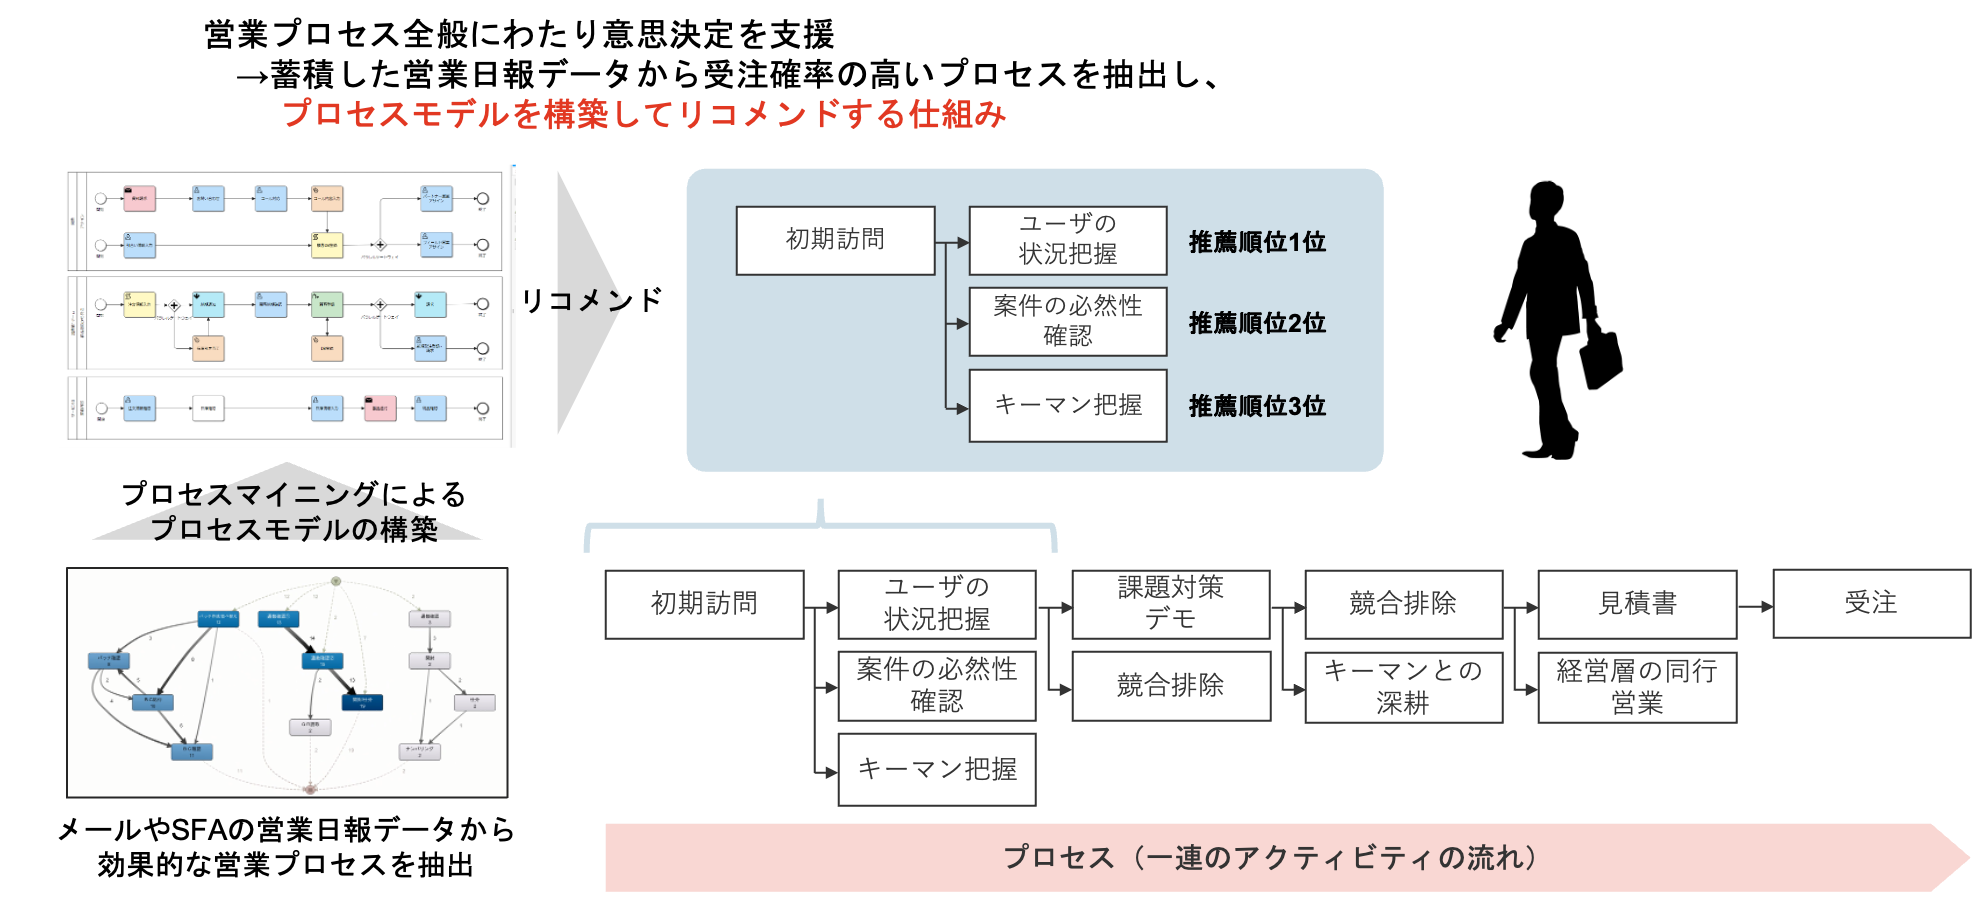 NTTデータ イントラマートが東京大学と プロセスマイニング領域における共同研究をスタート